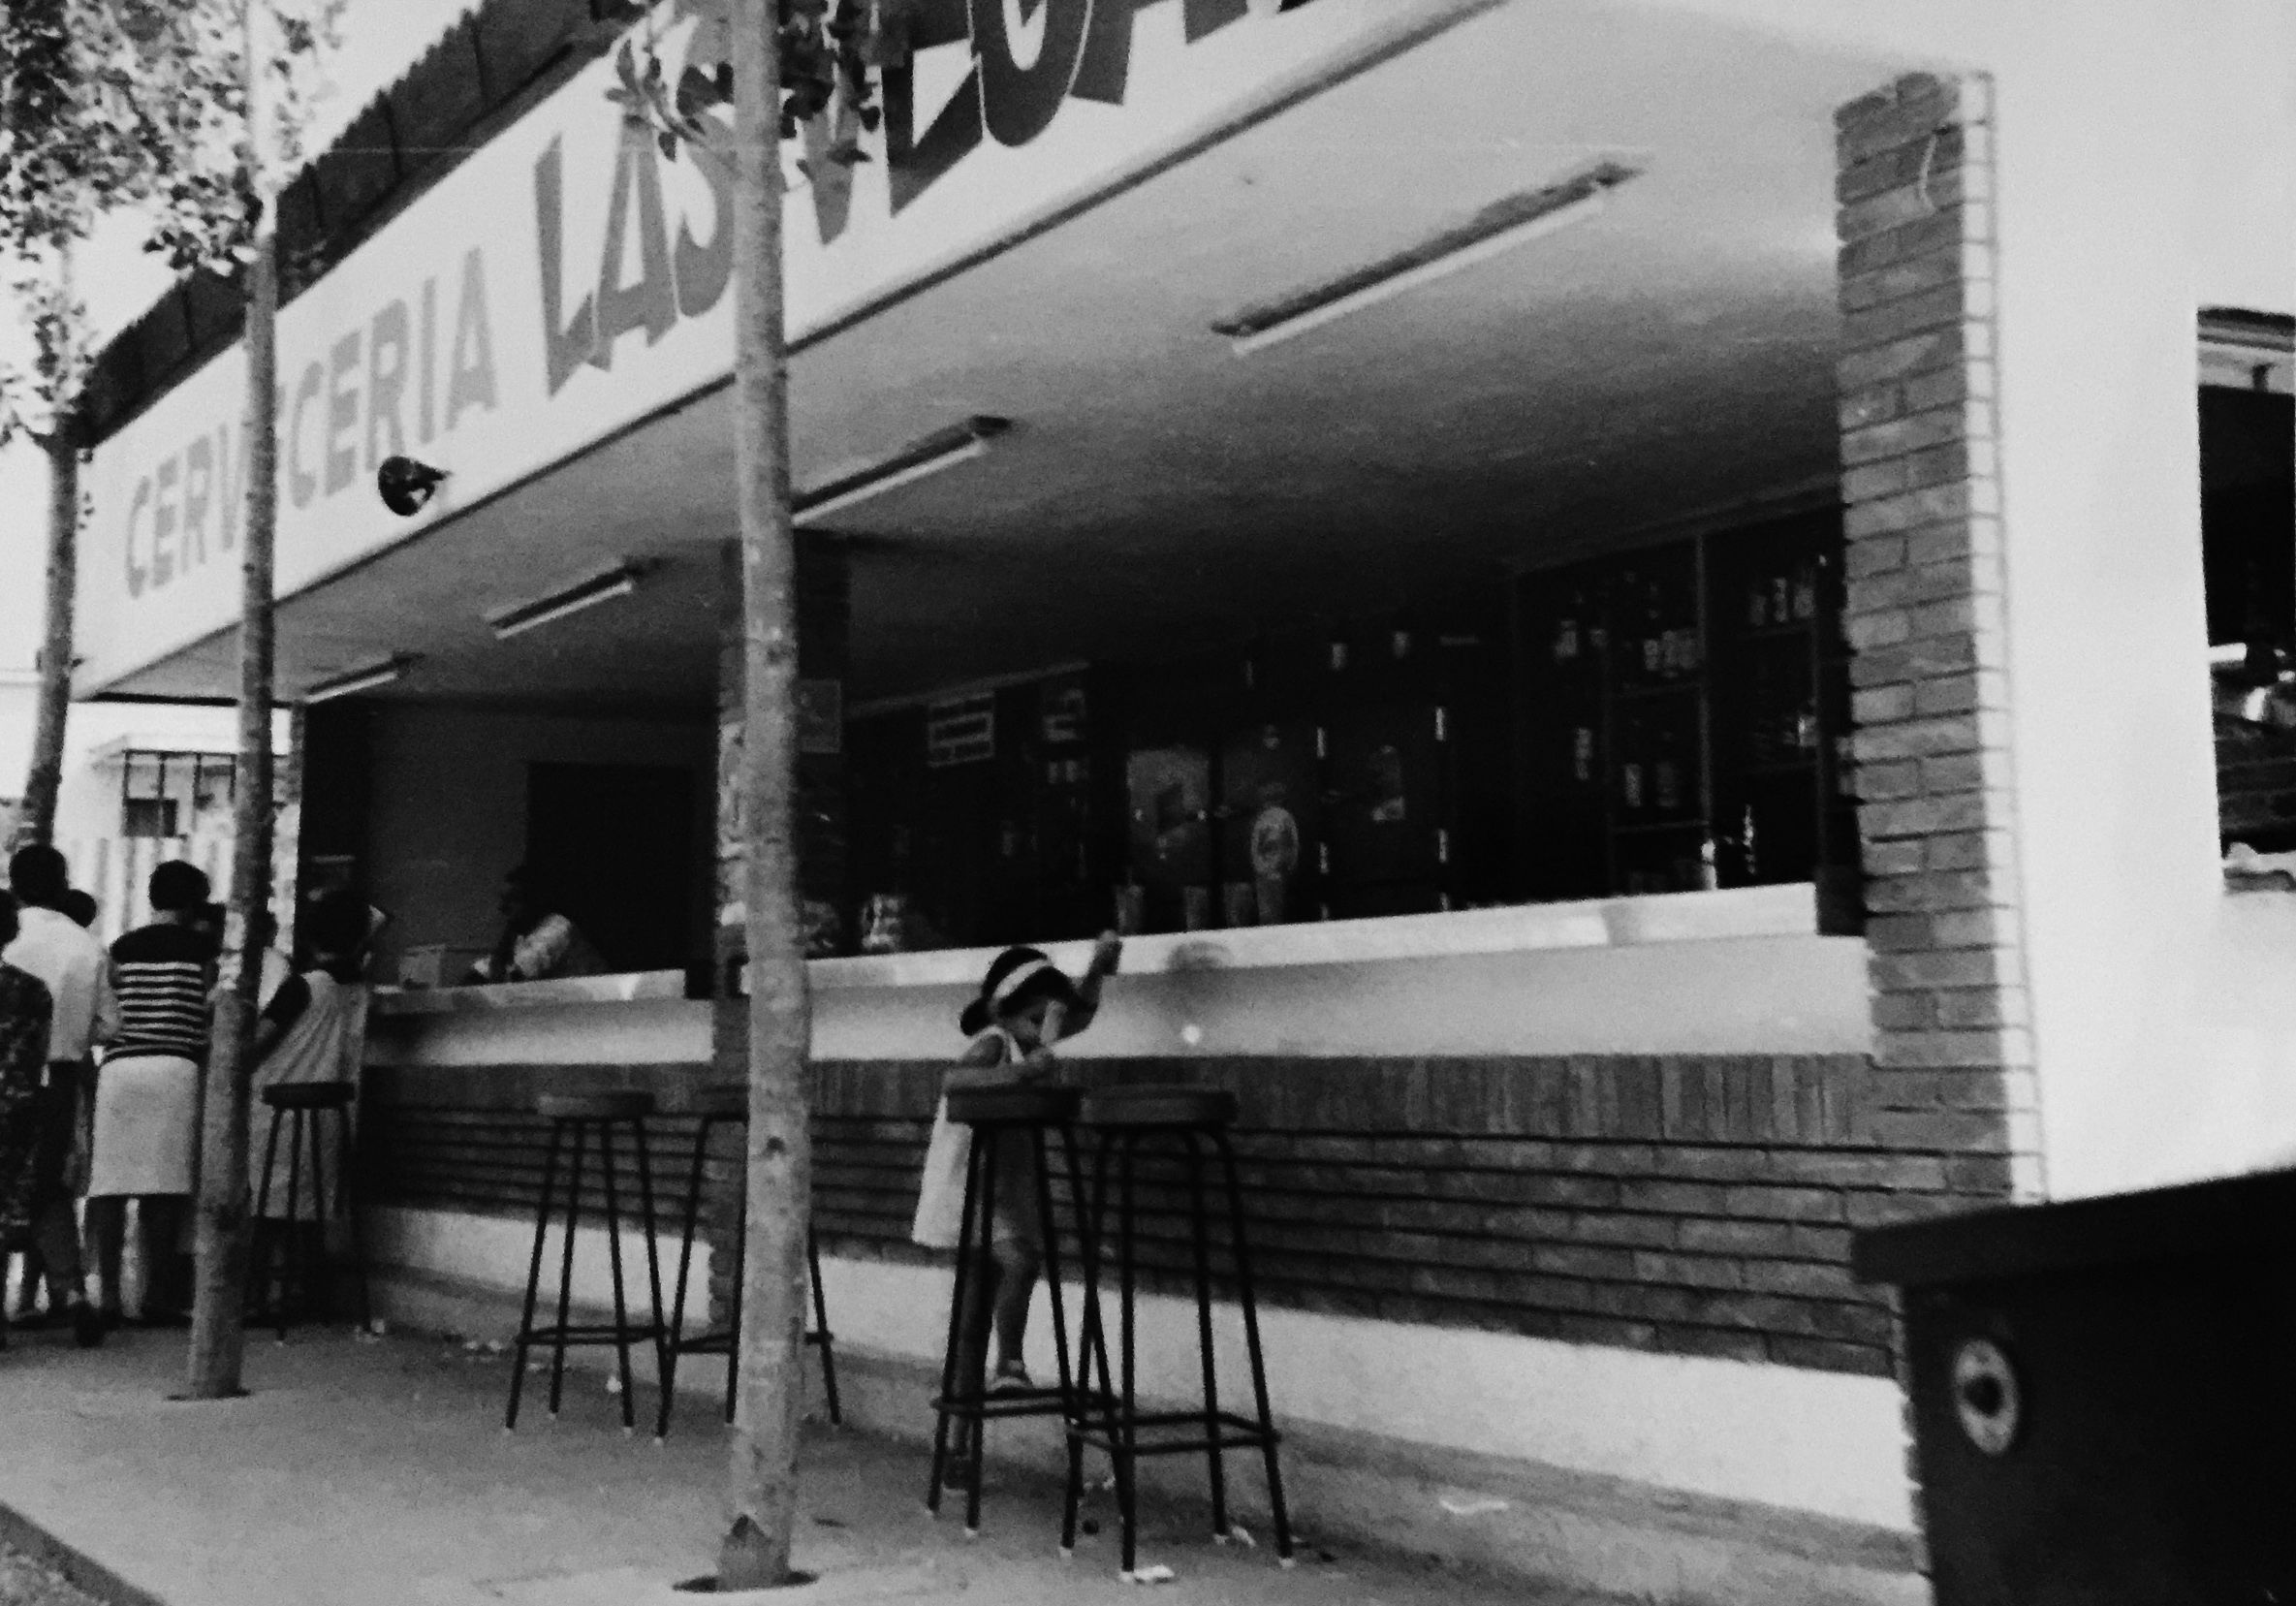 La despareguda "Cervecería Las Vegas" a Cerdanyola del Vallès.